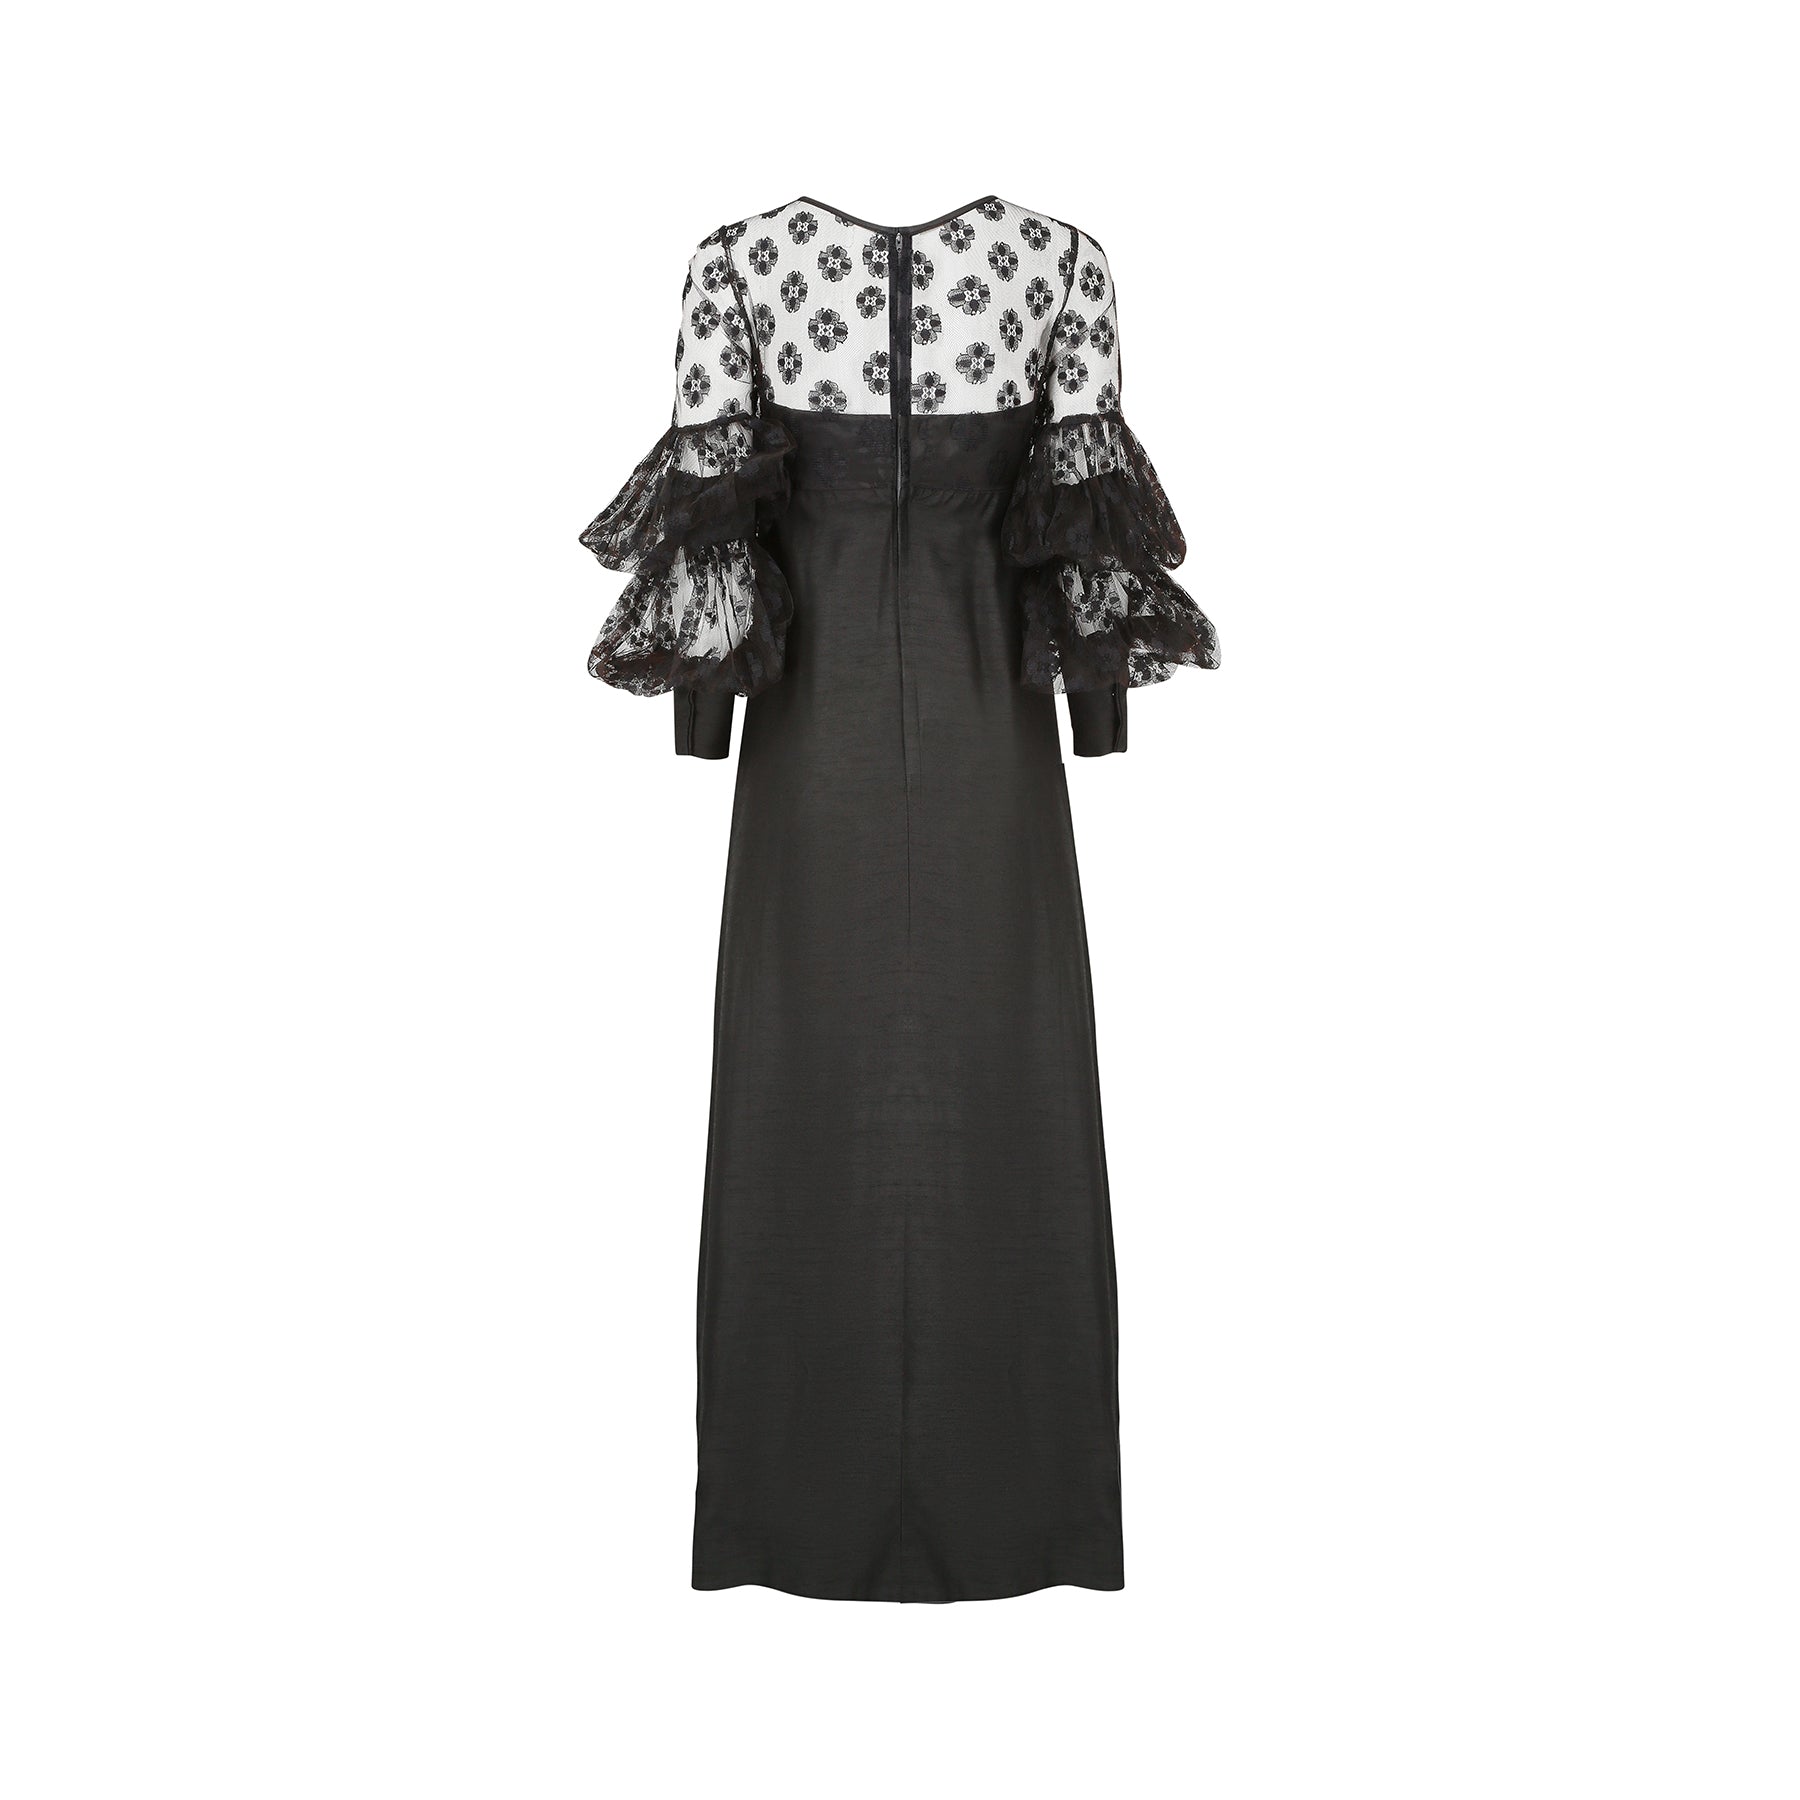 1960s Jean Varon Black Lace Maxi Dress